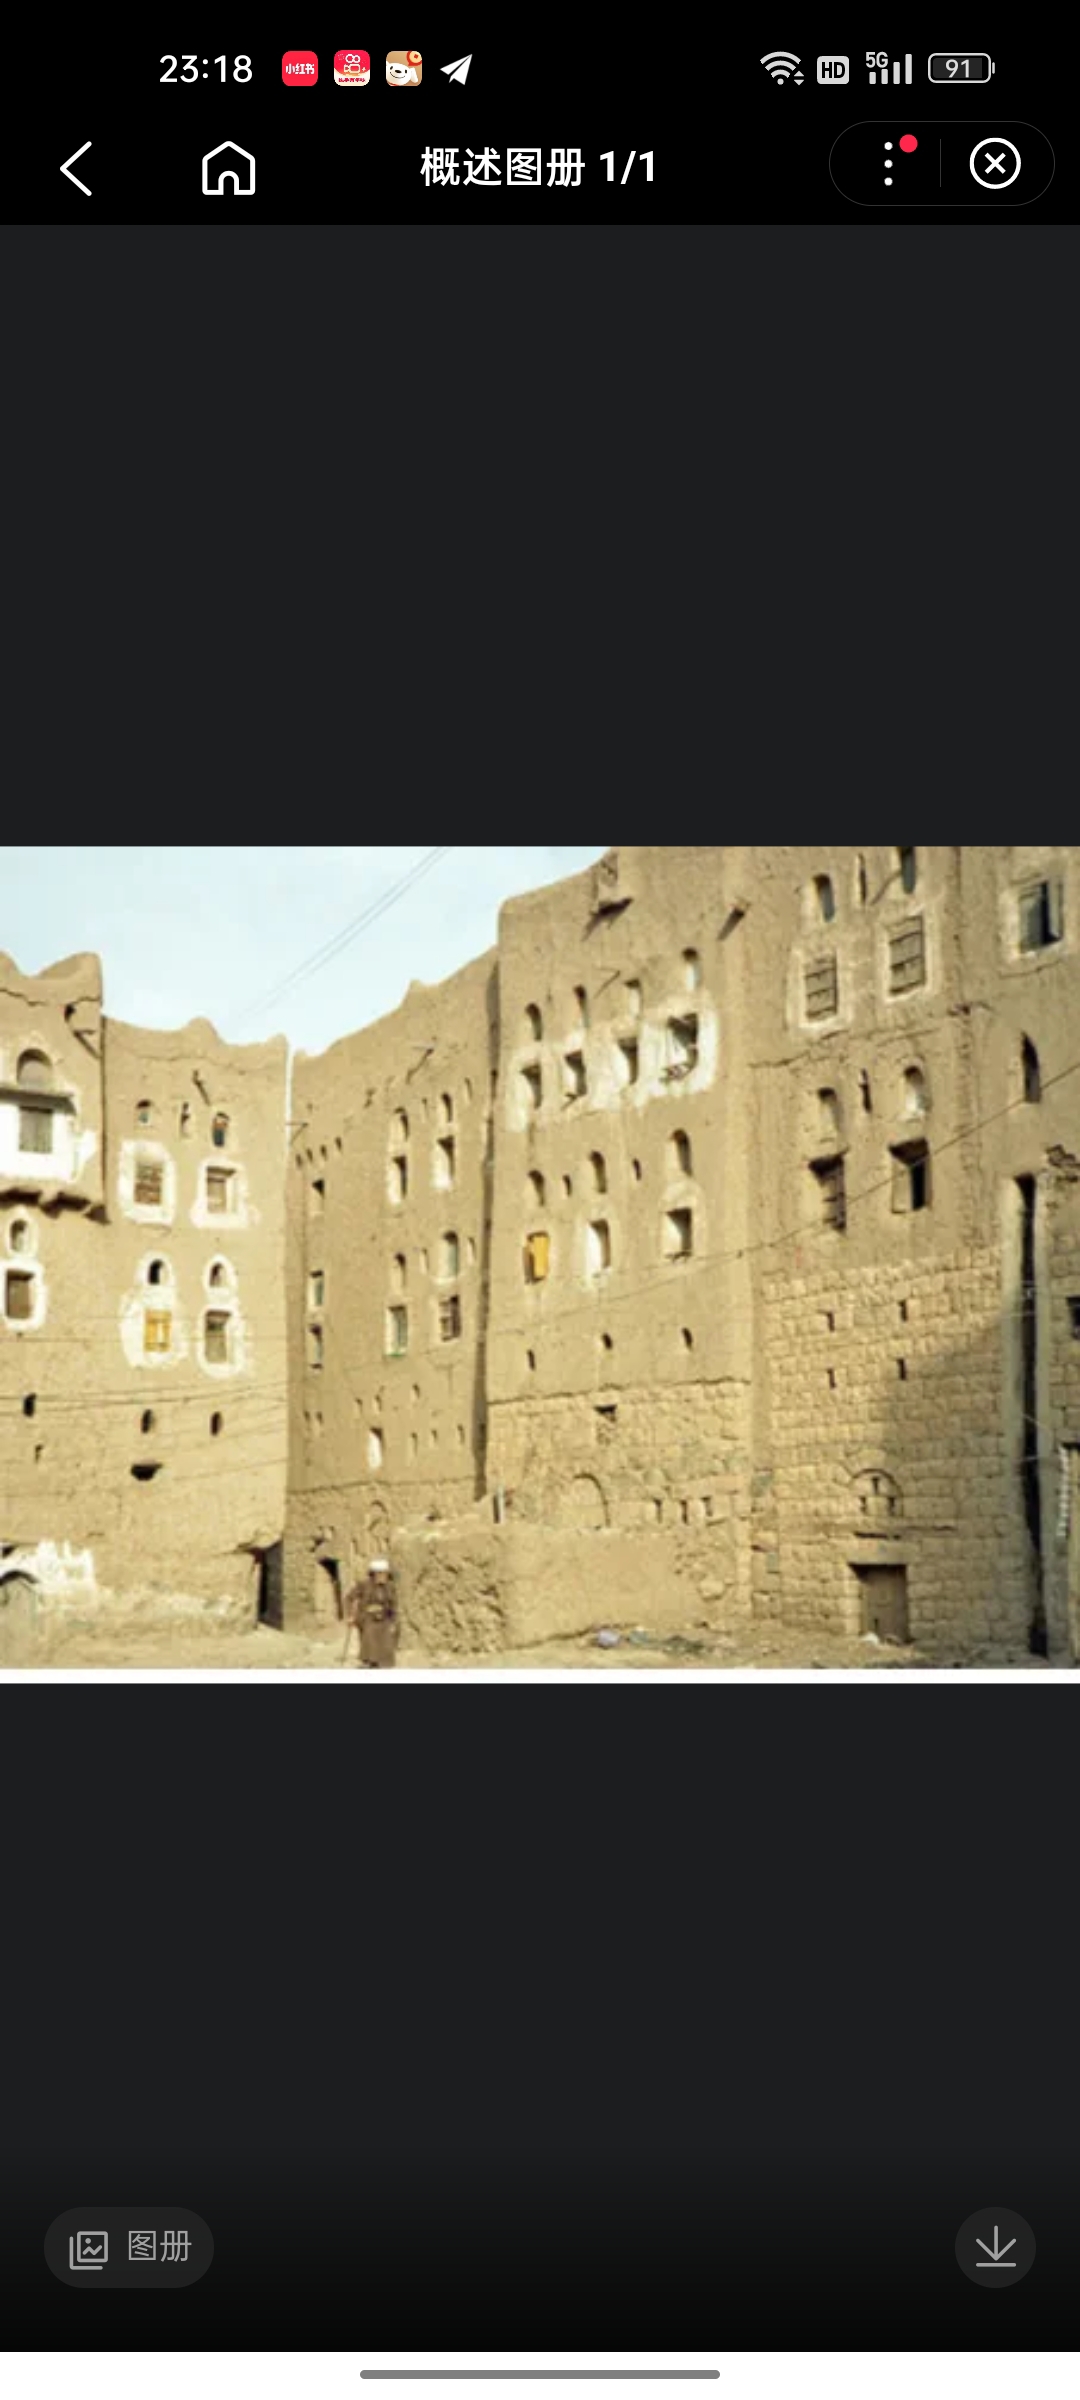 阿姆兰是也门阿姆兰省的首府，是一座小城